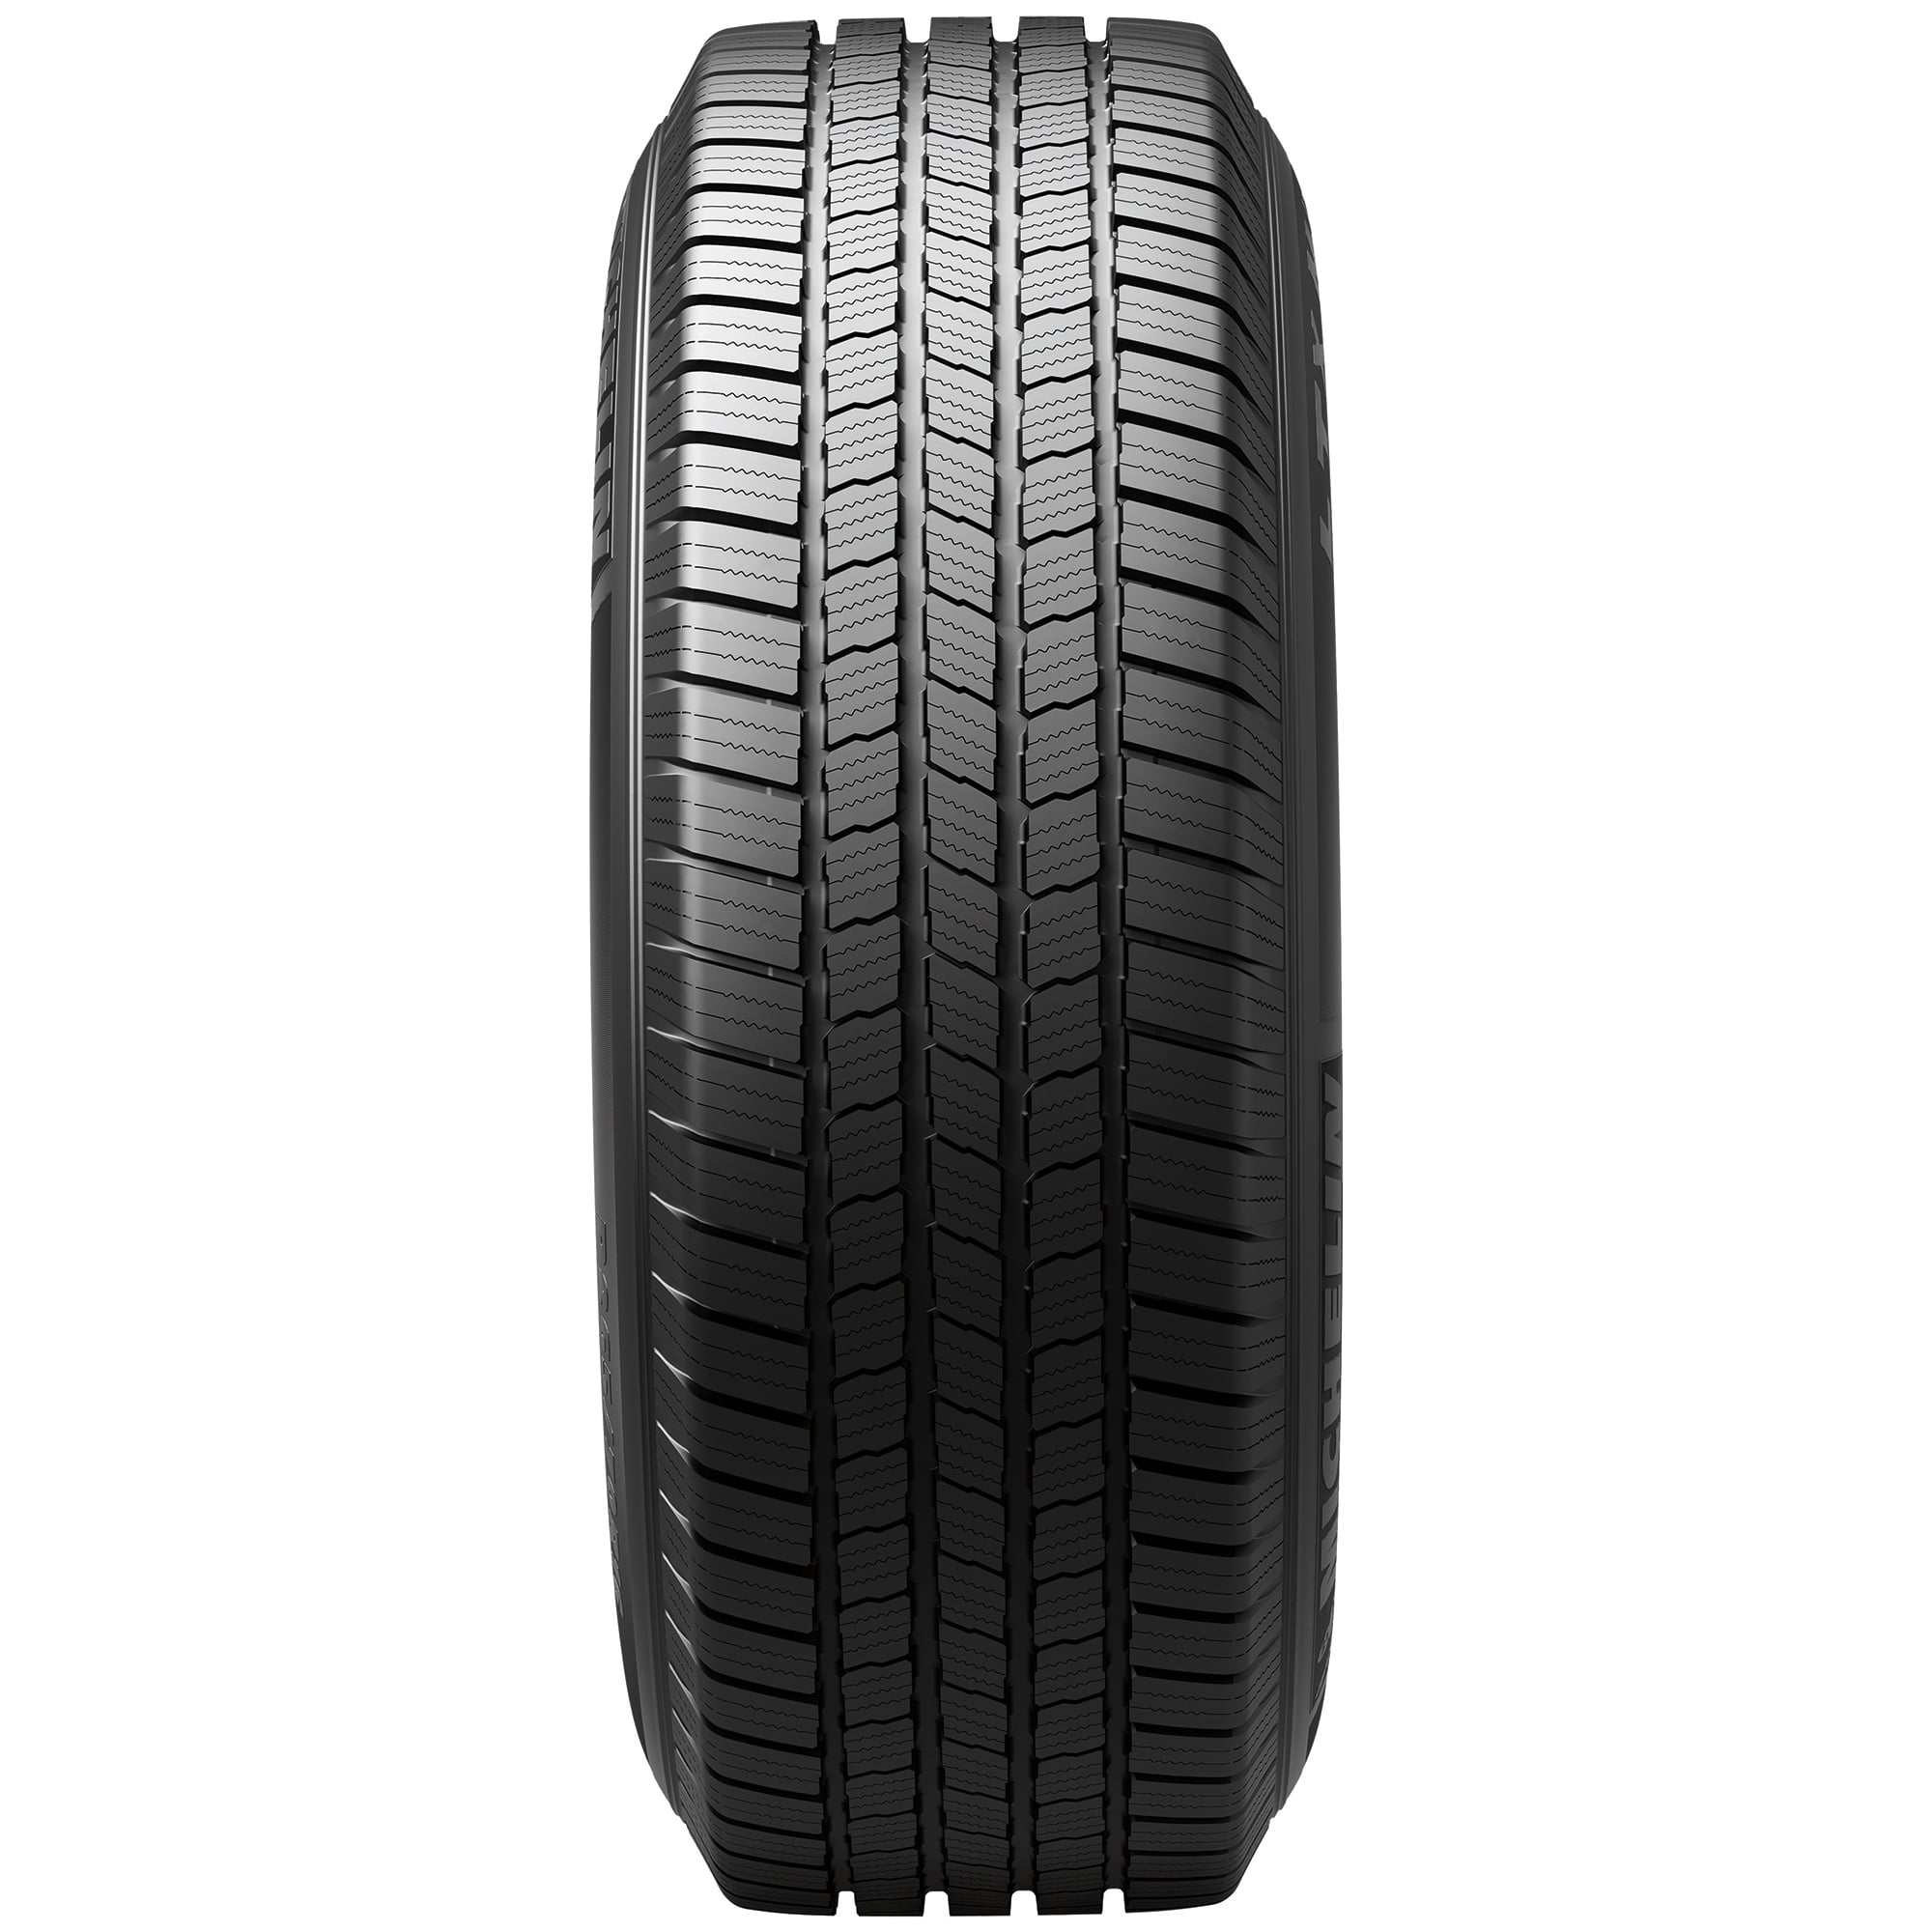 Michelin LTX M/S2 265/70R17 113 T Tire 